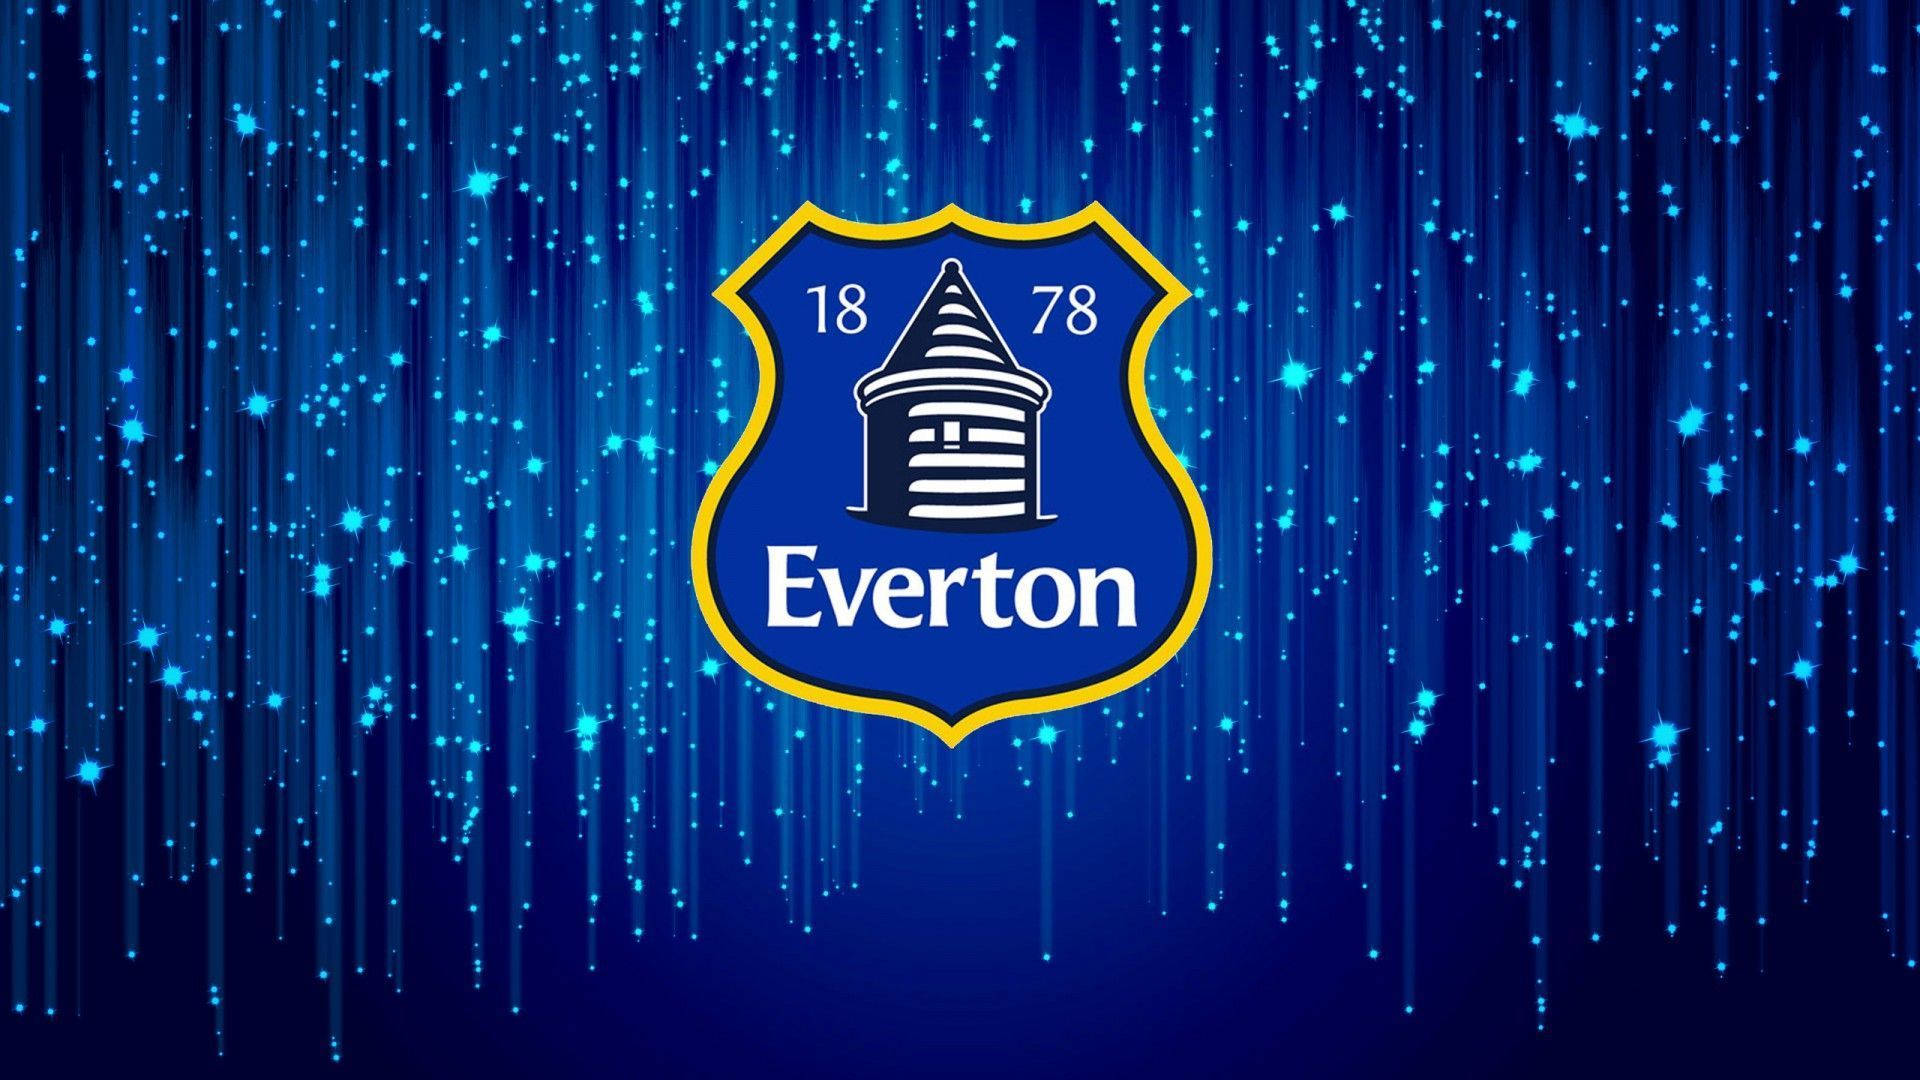 Everton F.c Emblem In Dark Blue Background